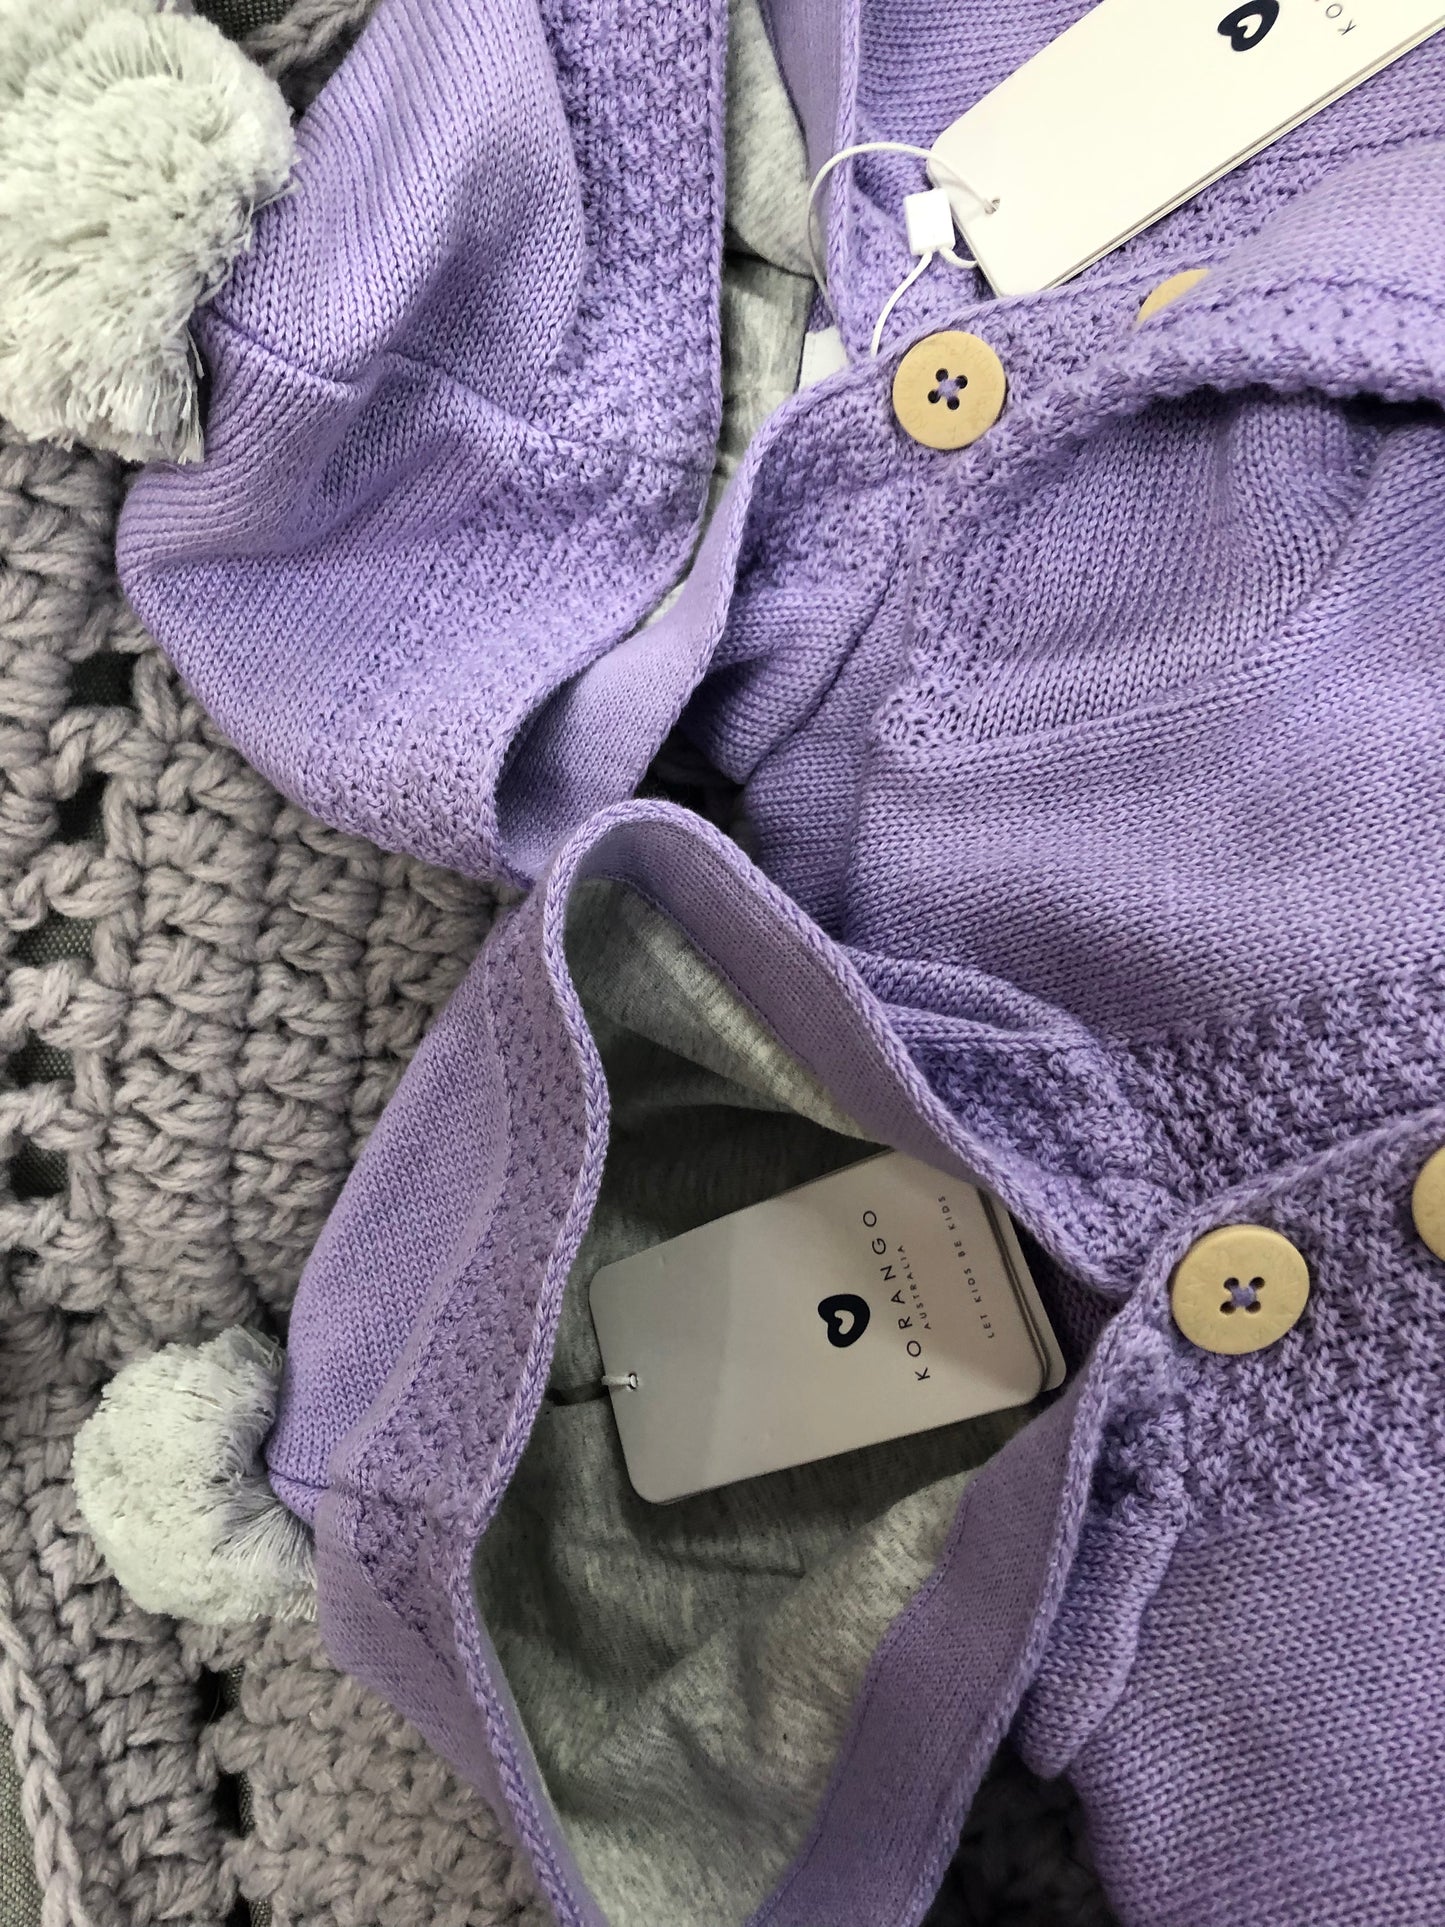 Korango Lavender Knit Jacket with Contrast Pockets and Pom Pom